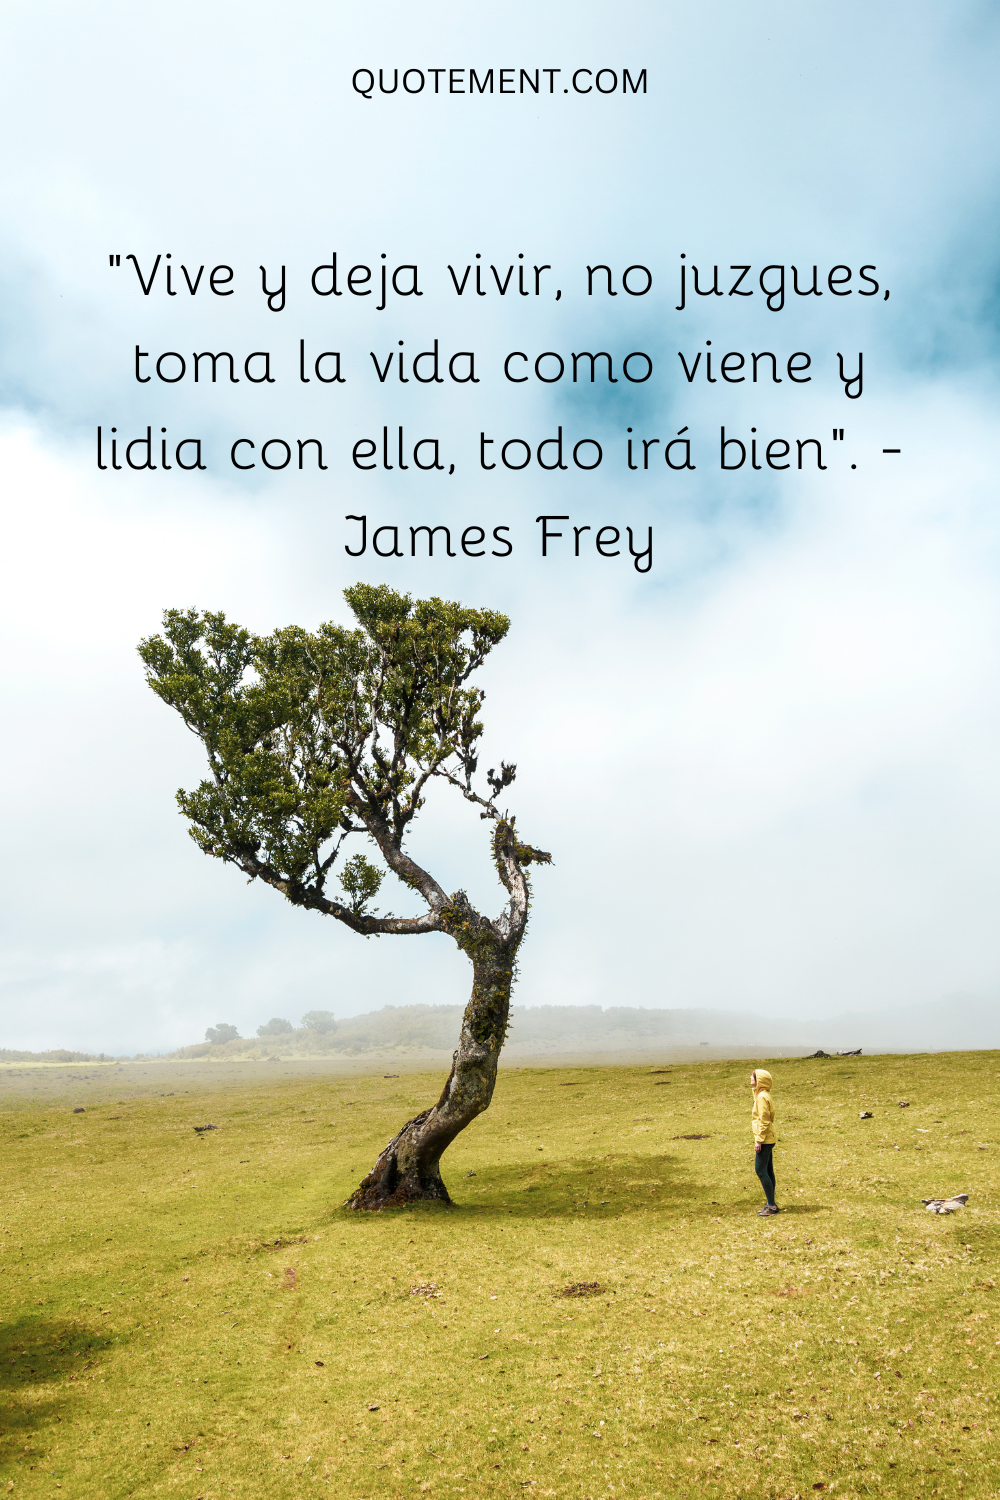 "Vive y deja vivir, no juzgues, toma la vida como viene y lidia con ella, todo irá bien". - James Frey